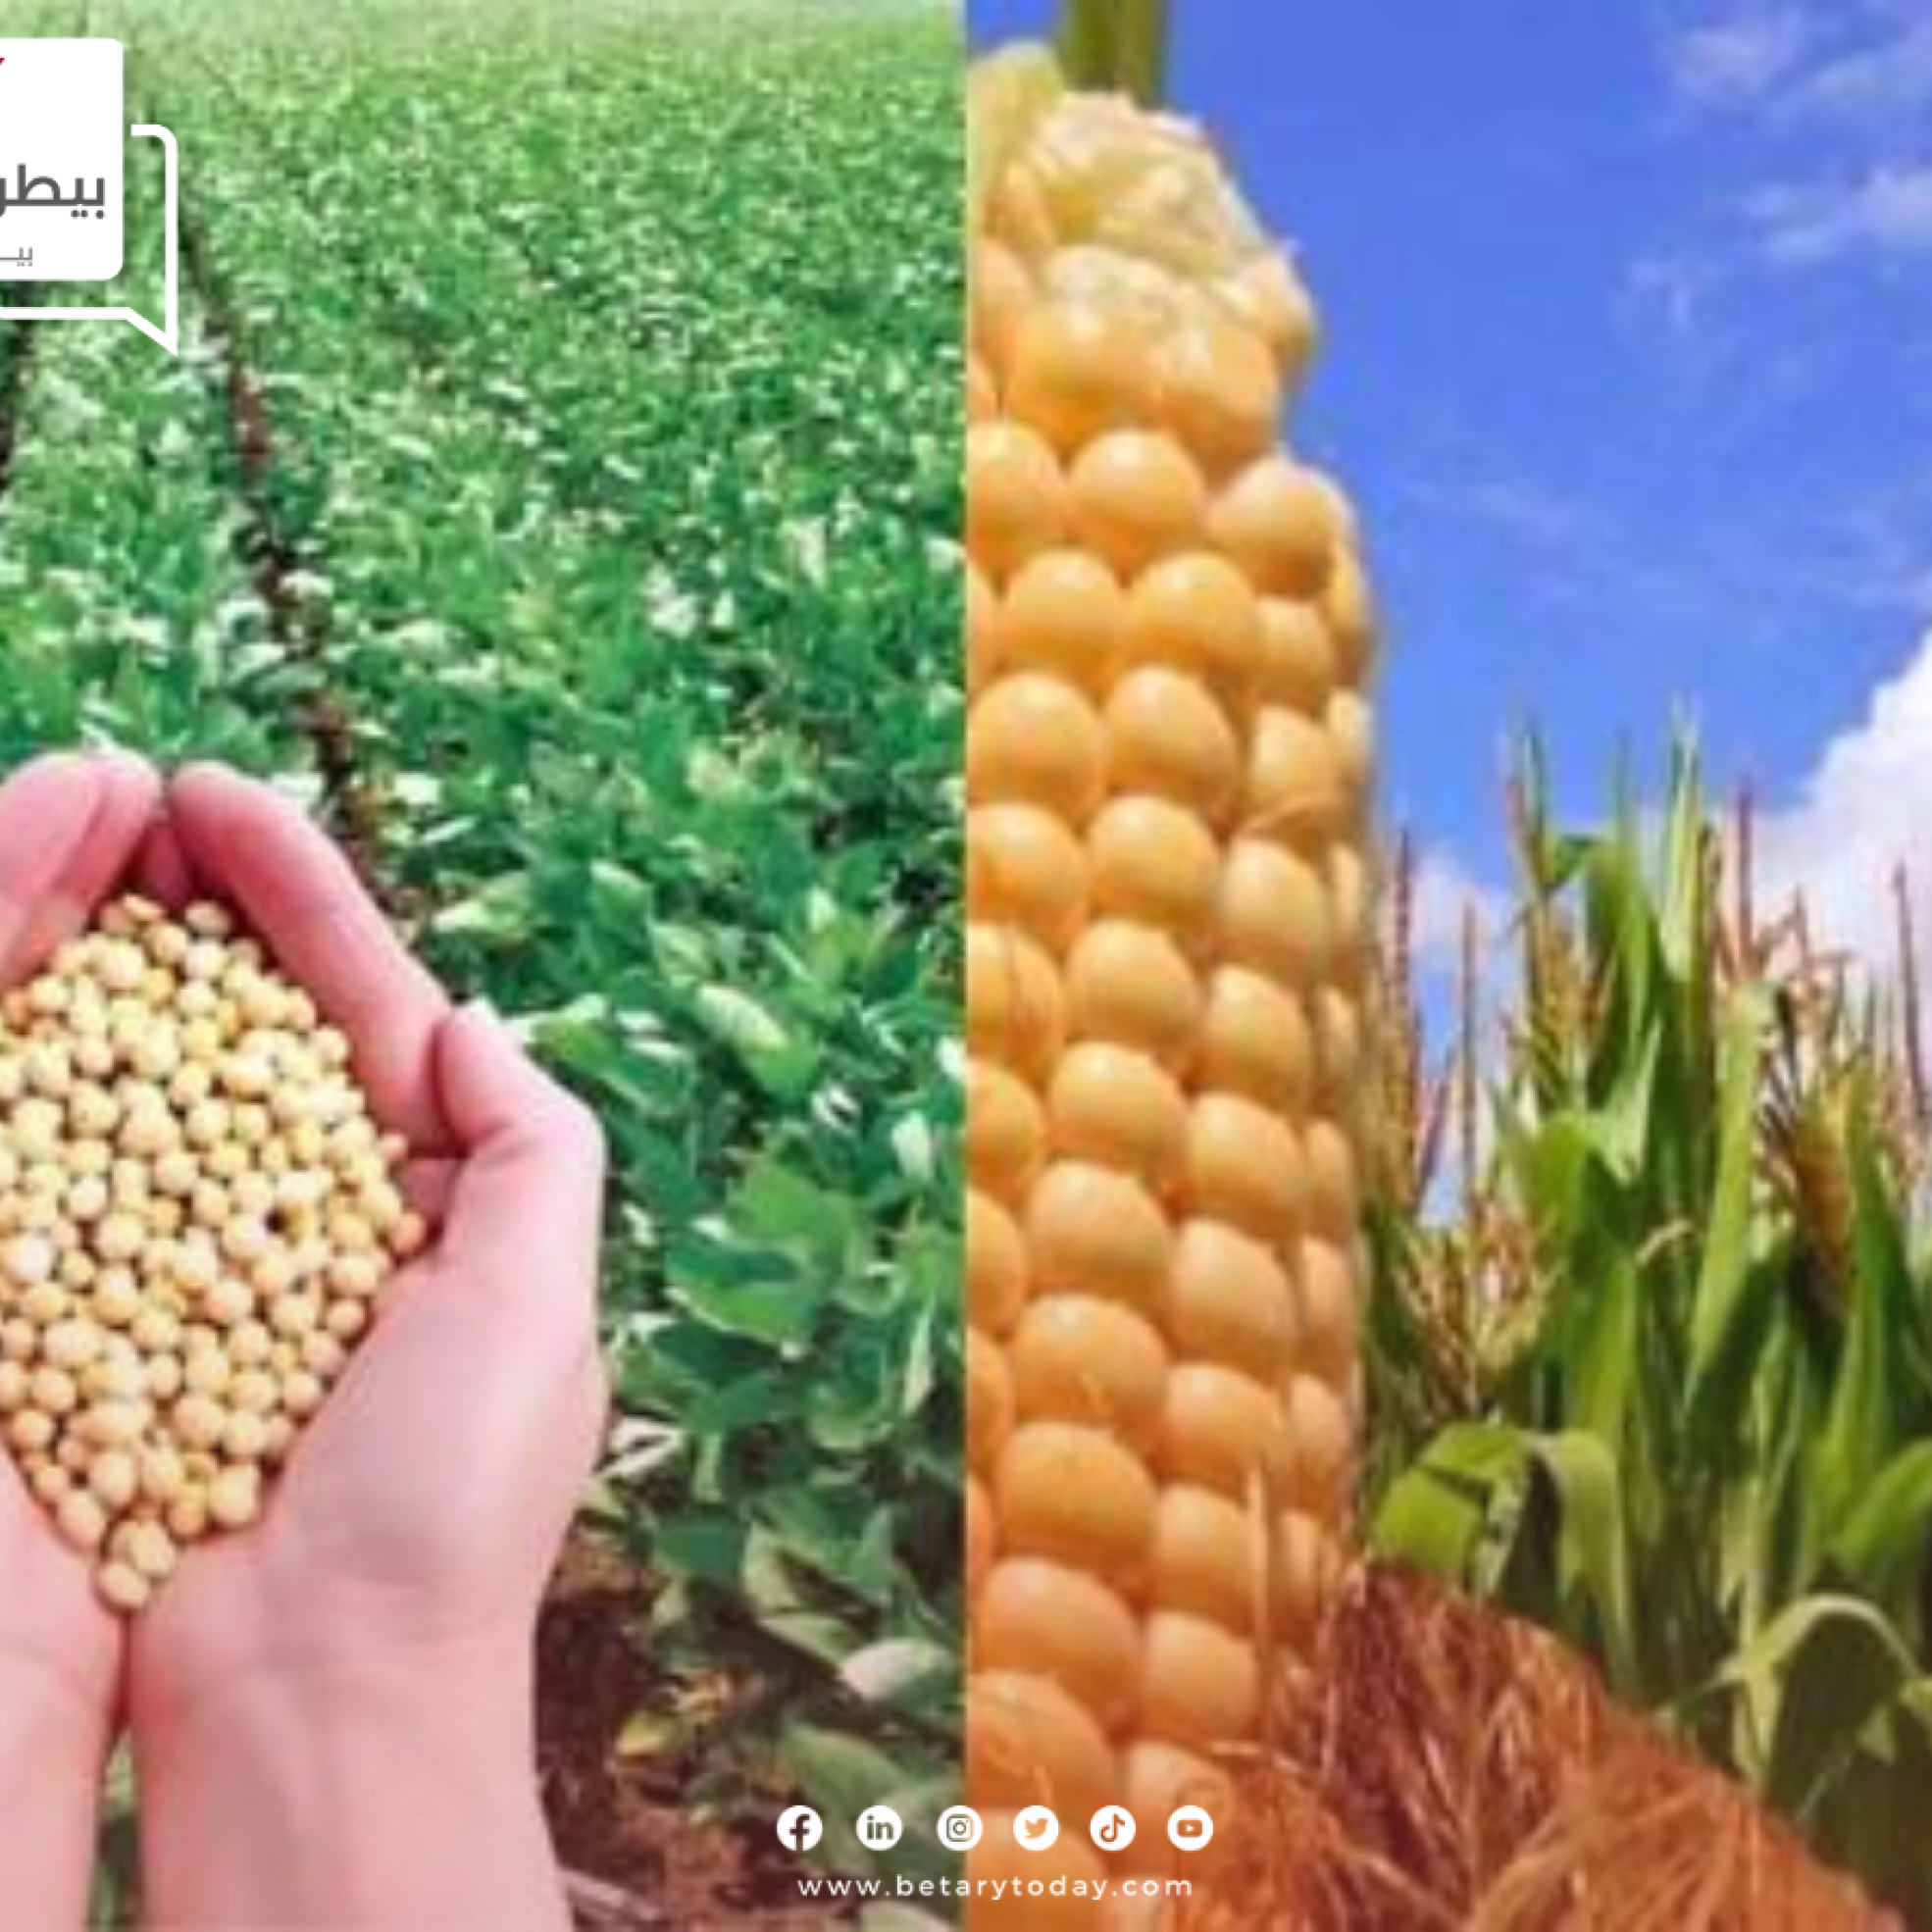 مجلس الحبوب الدولي يثبت تقديرات إنتاج الصويا العالمي ويرفع انتاجية الذرة الصفراء